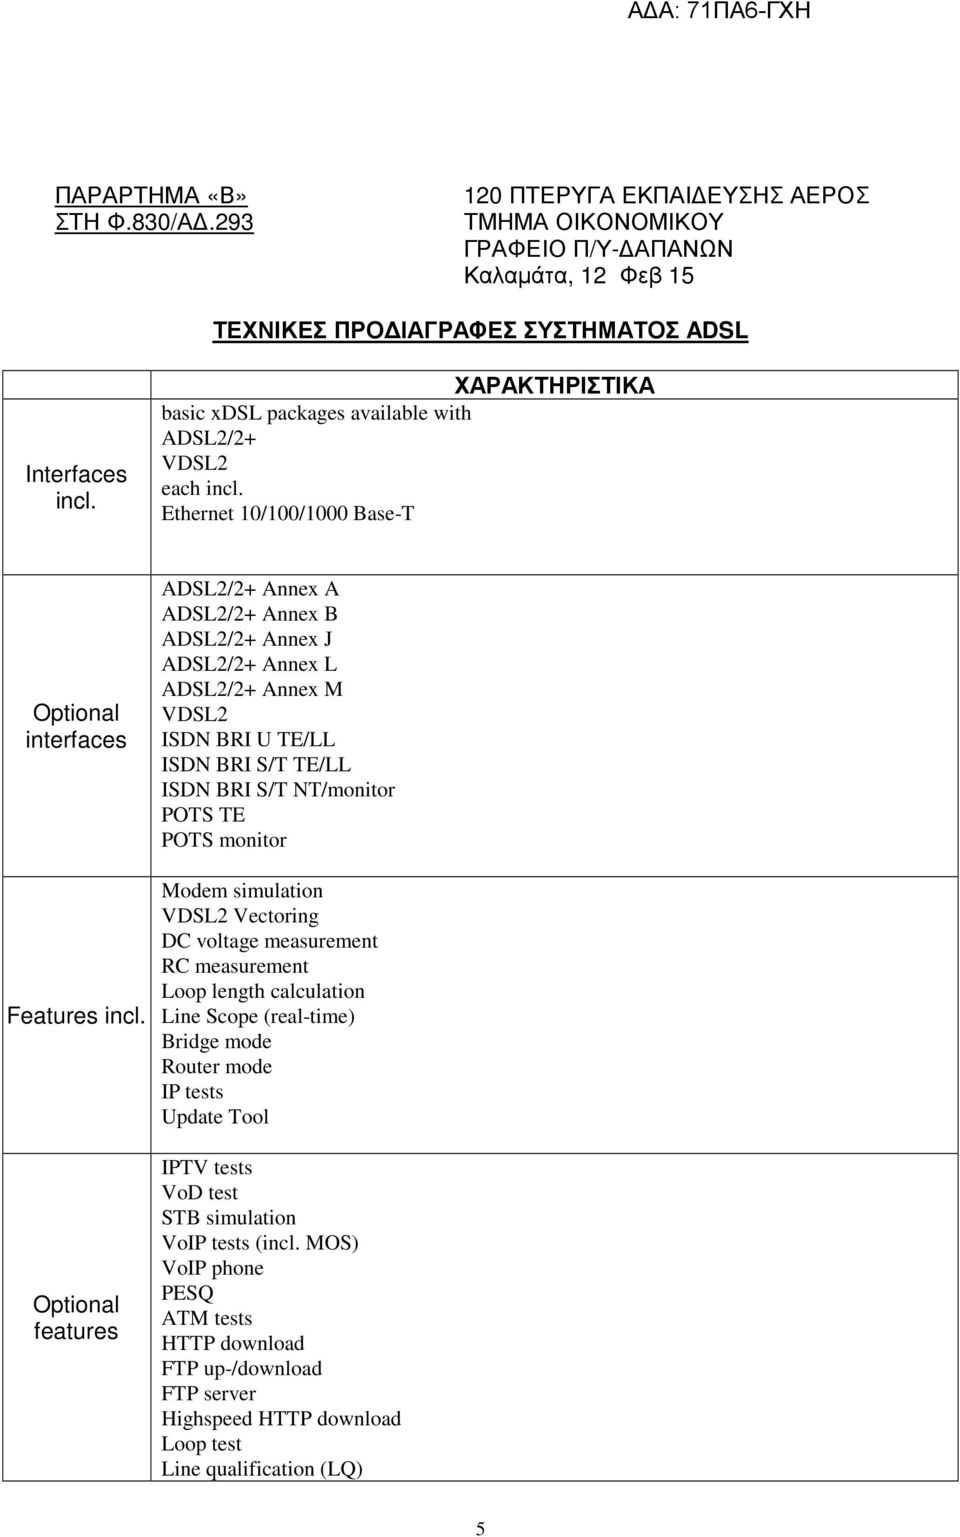 Optional features ADSL2/2+ Annex A ADSL2/2+ Annex B ADSL2/2+ Annex J ADSL2/2+ Annex L ADSL2/2+ Annex M VDSL2 ISDN BRI U TE/LL ISDN BRI S/T TE/LL ISDN BRI S/T NT/monitor POTS TE POTS monitor Modem